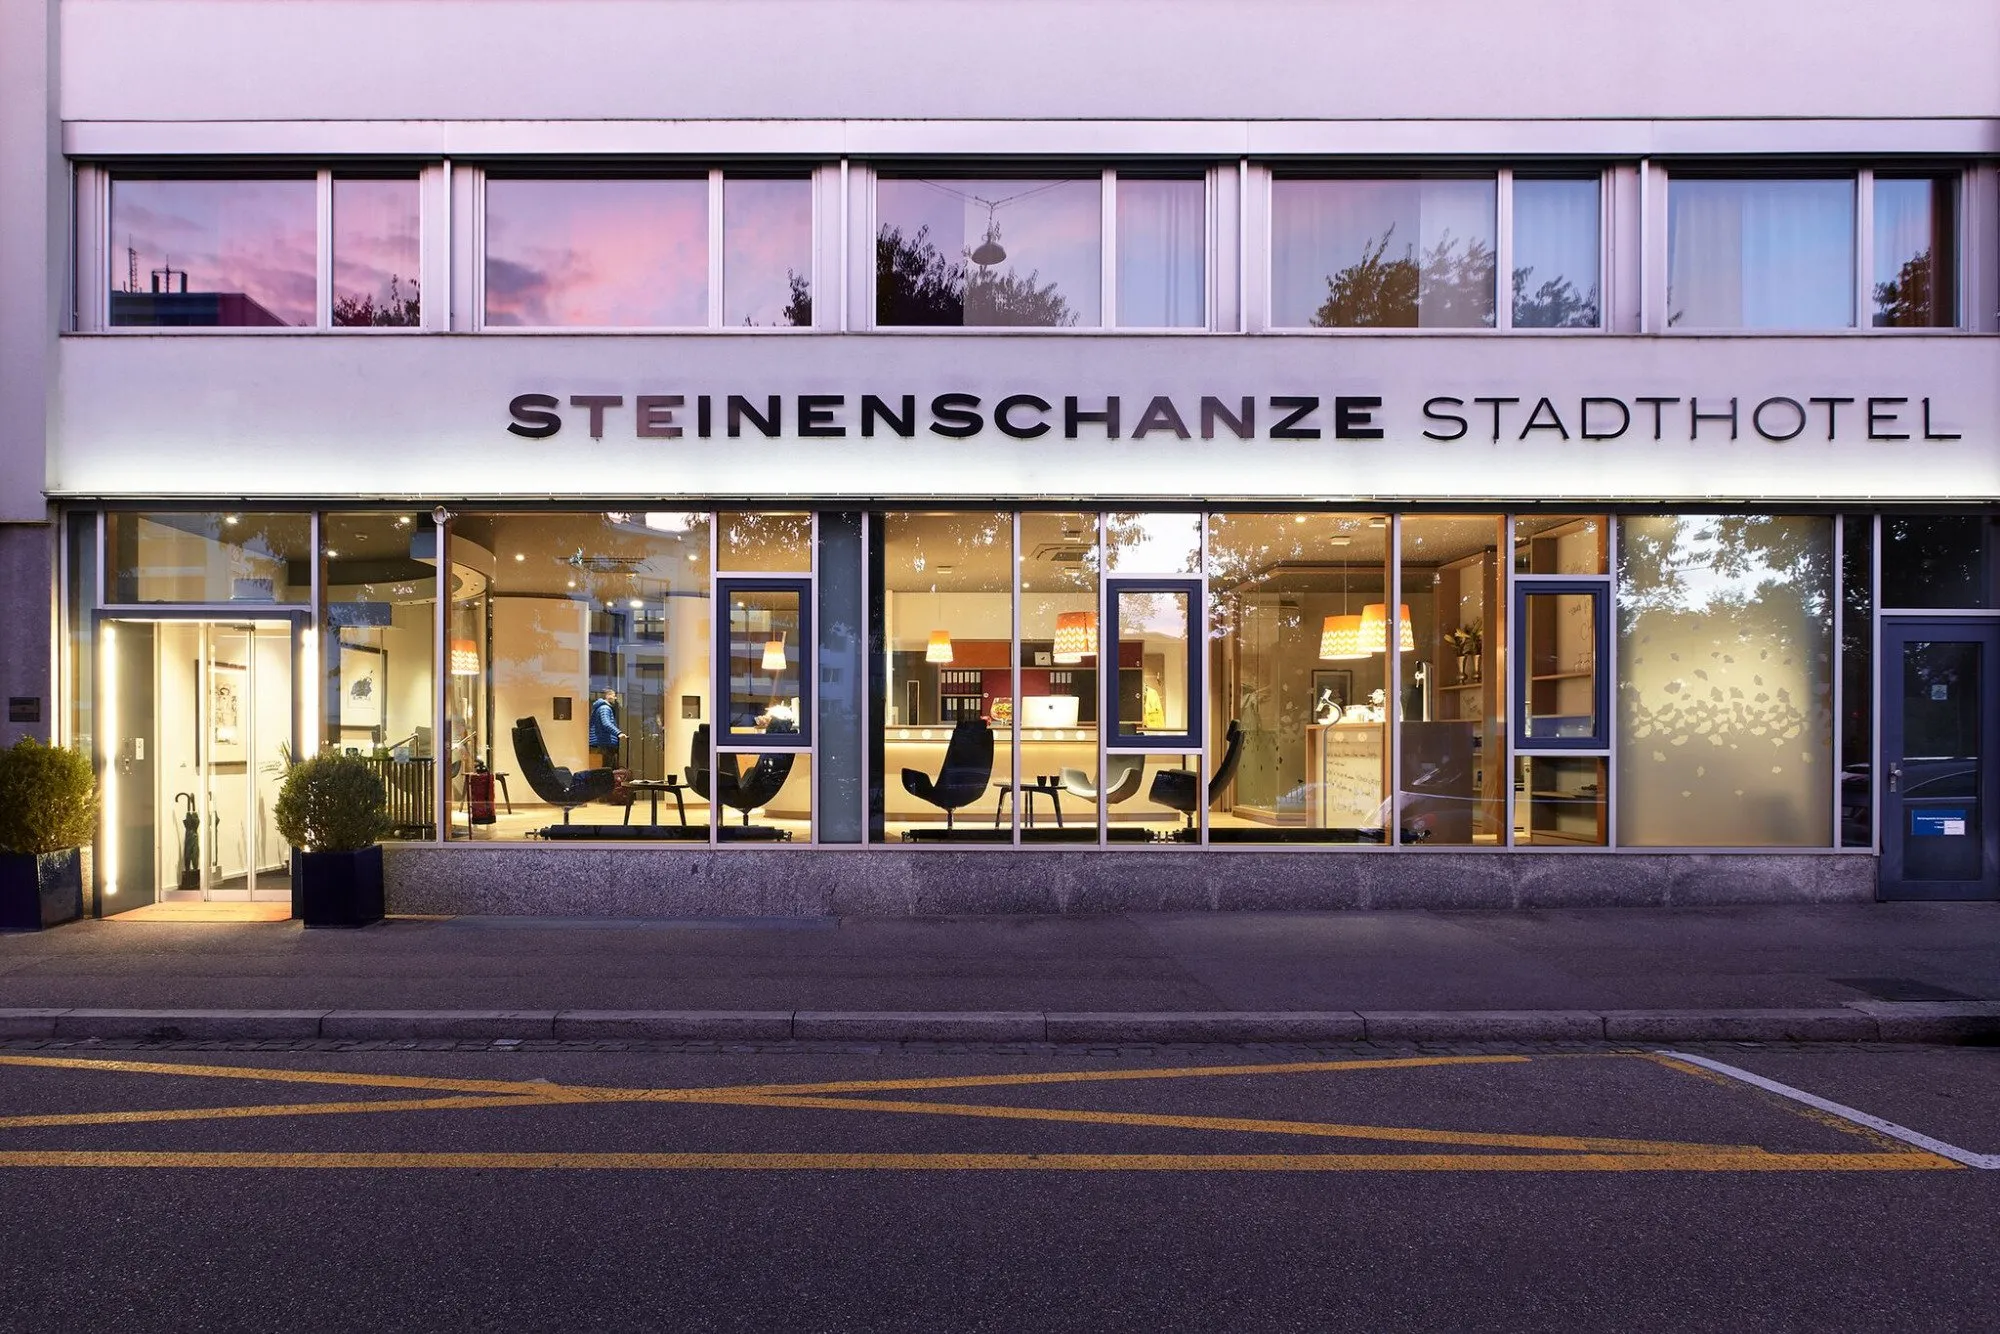 Building hotel Steinenschanze Stadthotel